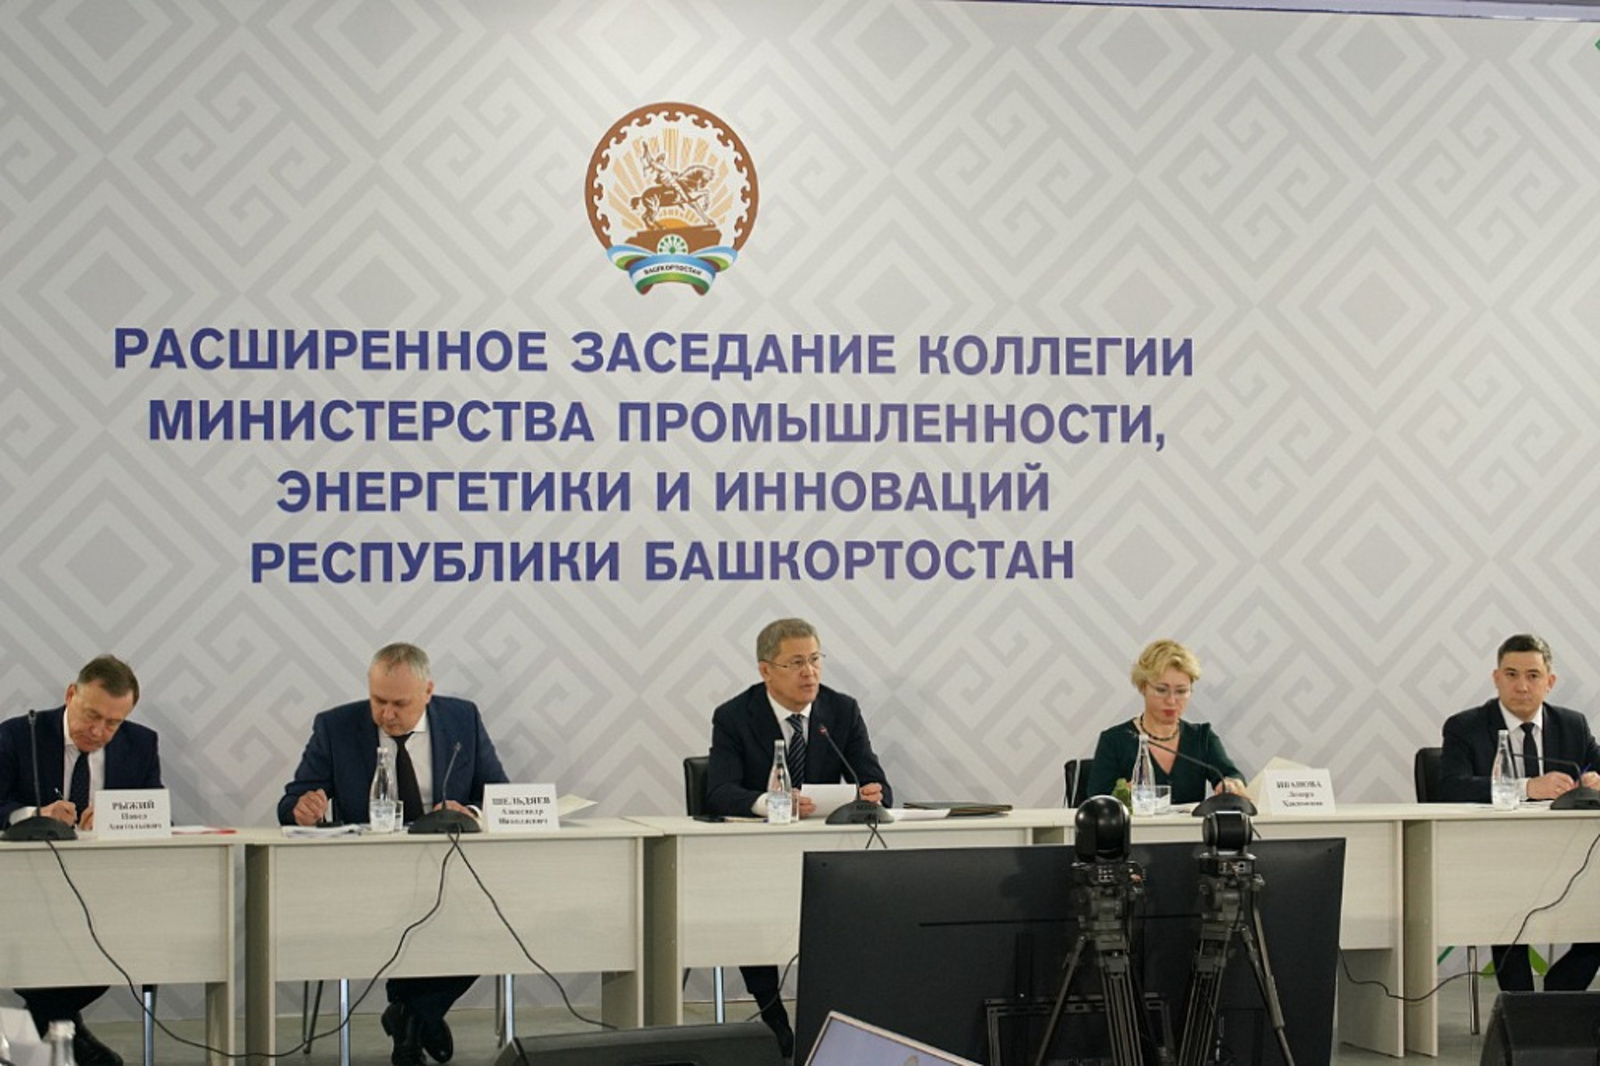 Расширенное заседание коллегии Министерства промышленности, энергетики и инноваций Башкортостана